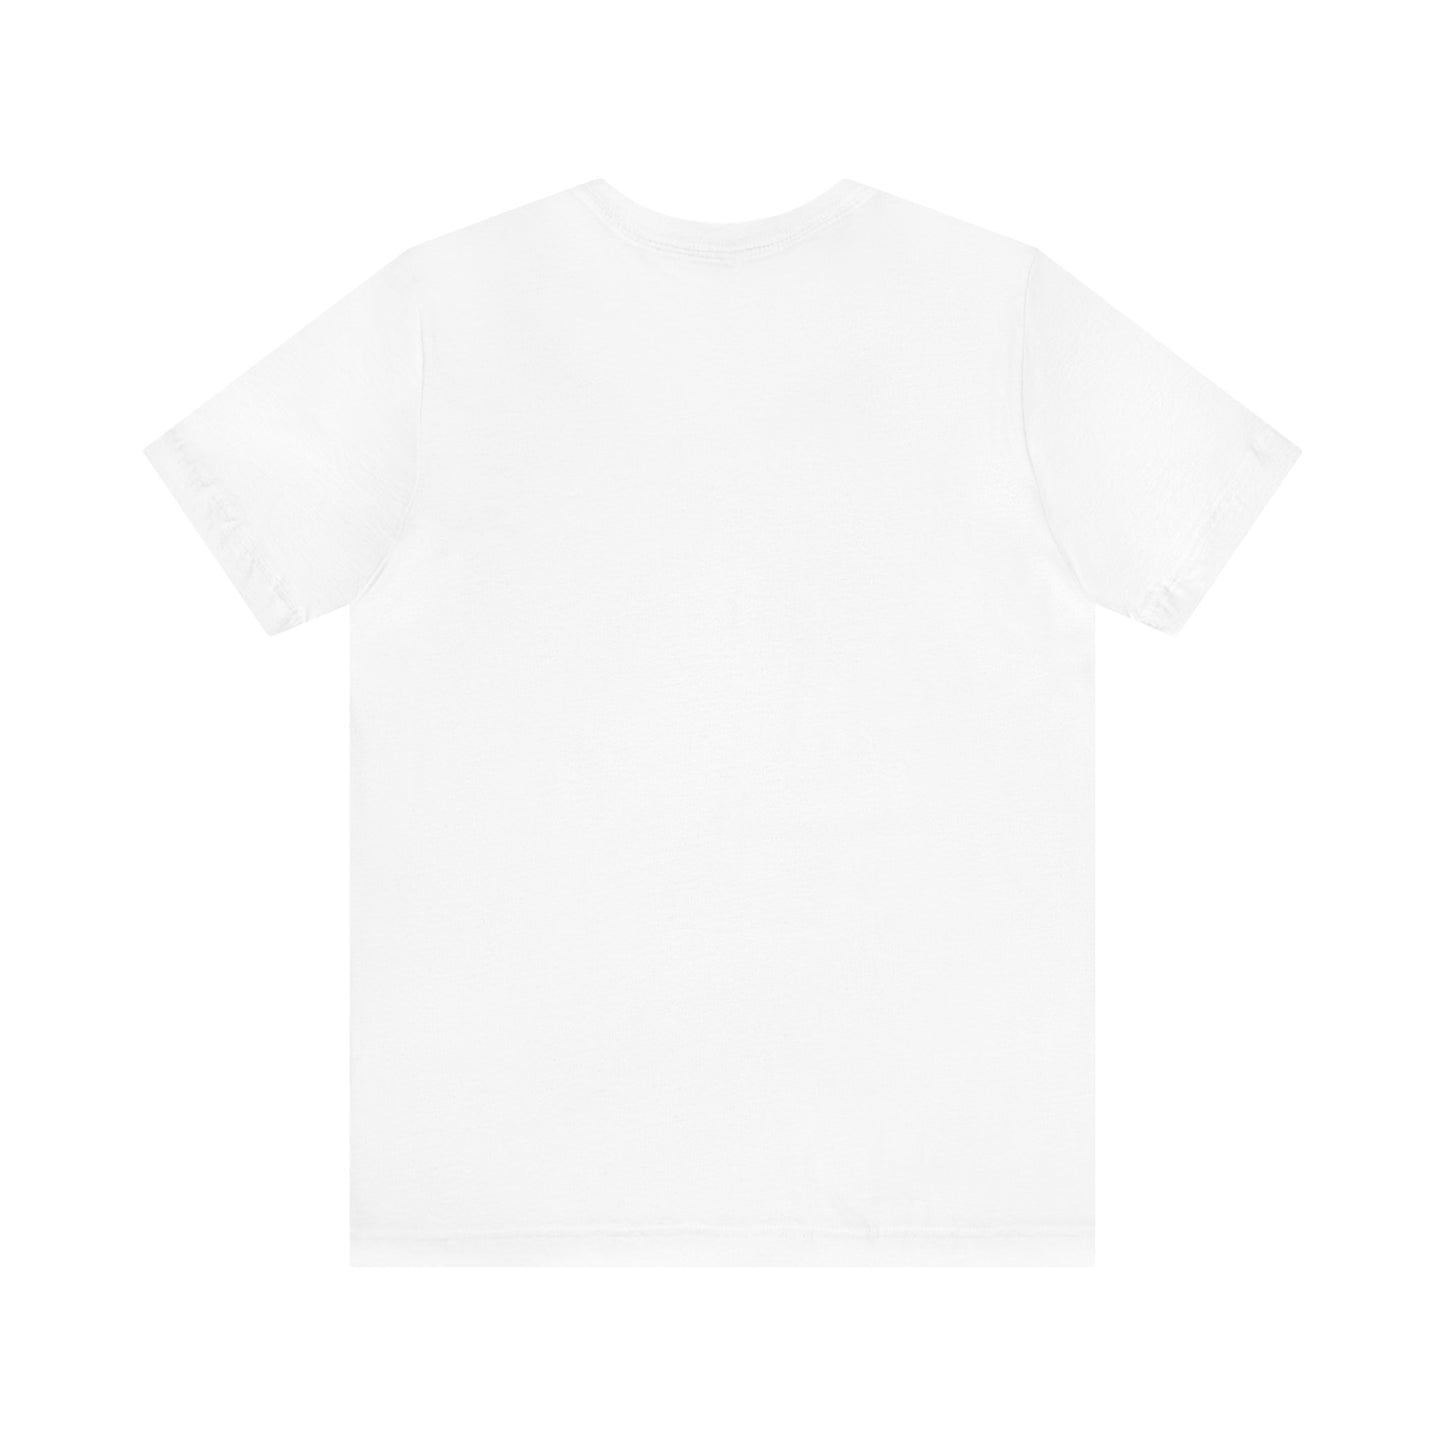 Cold War Kids Design Unisex Jersey Short Sleeve Tee Shirt